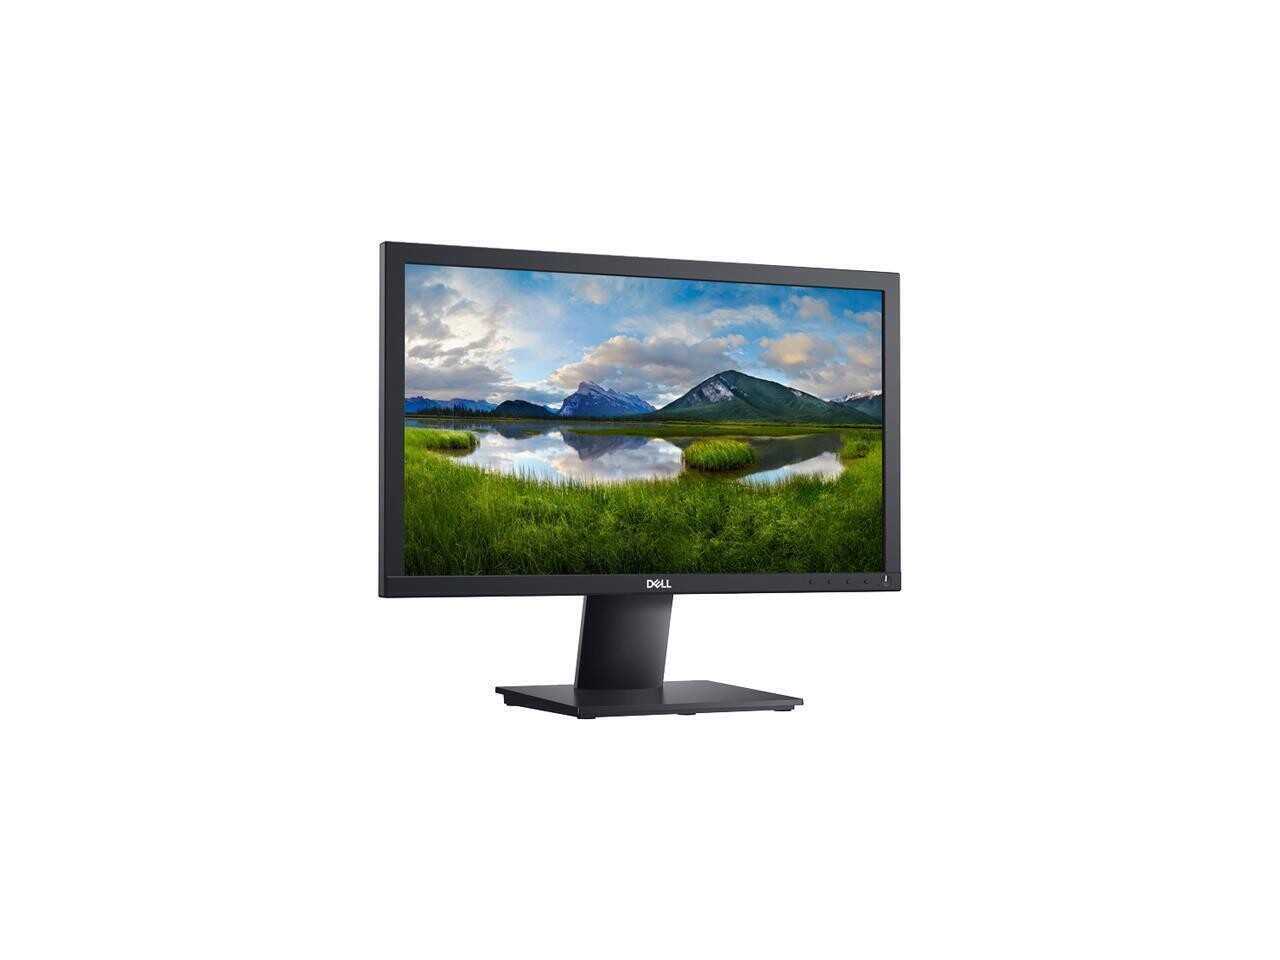 Dell E1920H 19" (18.5" Viewable) HD 1366 x 768 Grade A Monitor